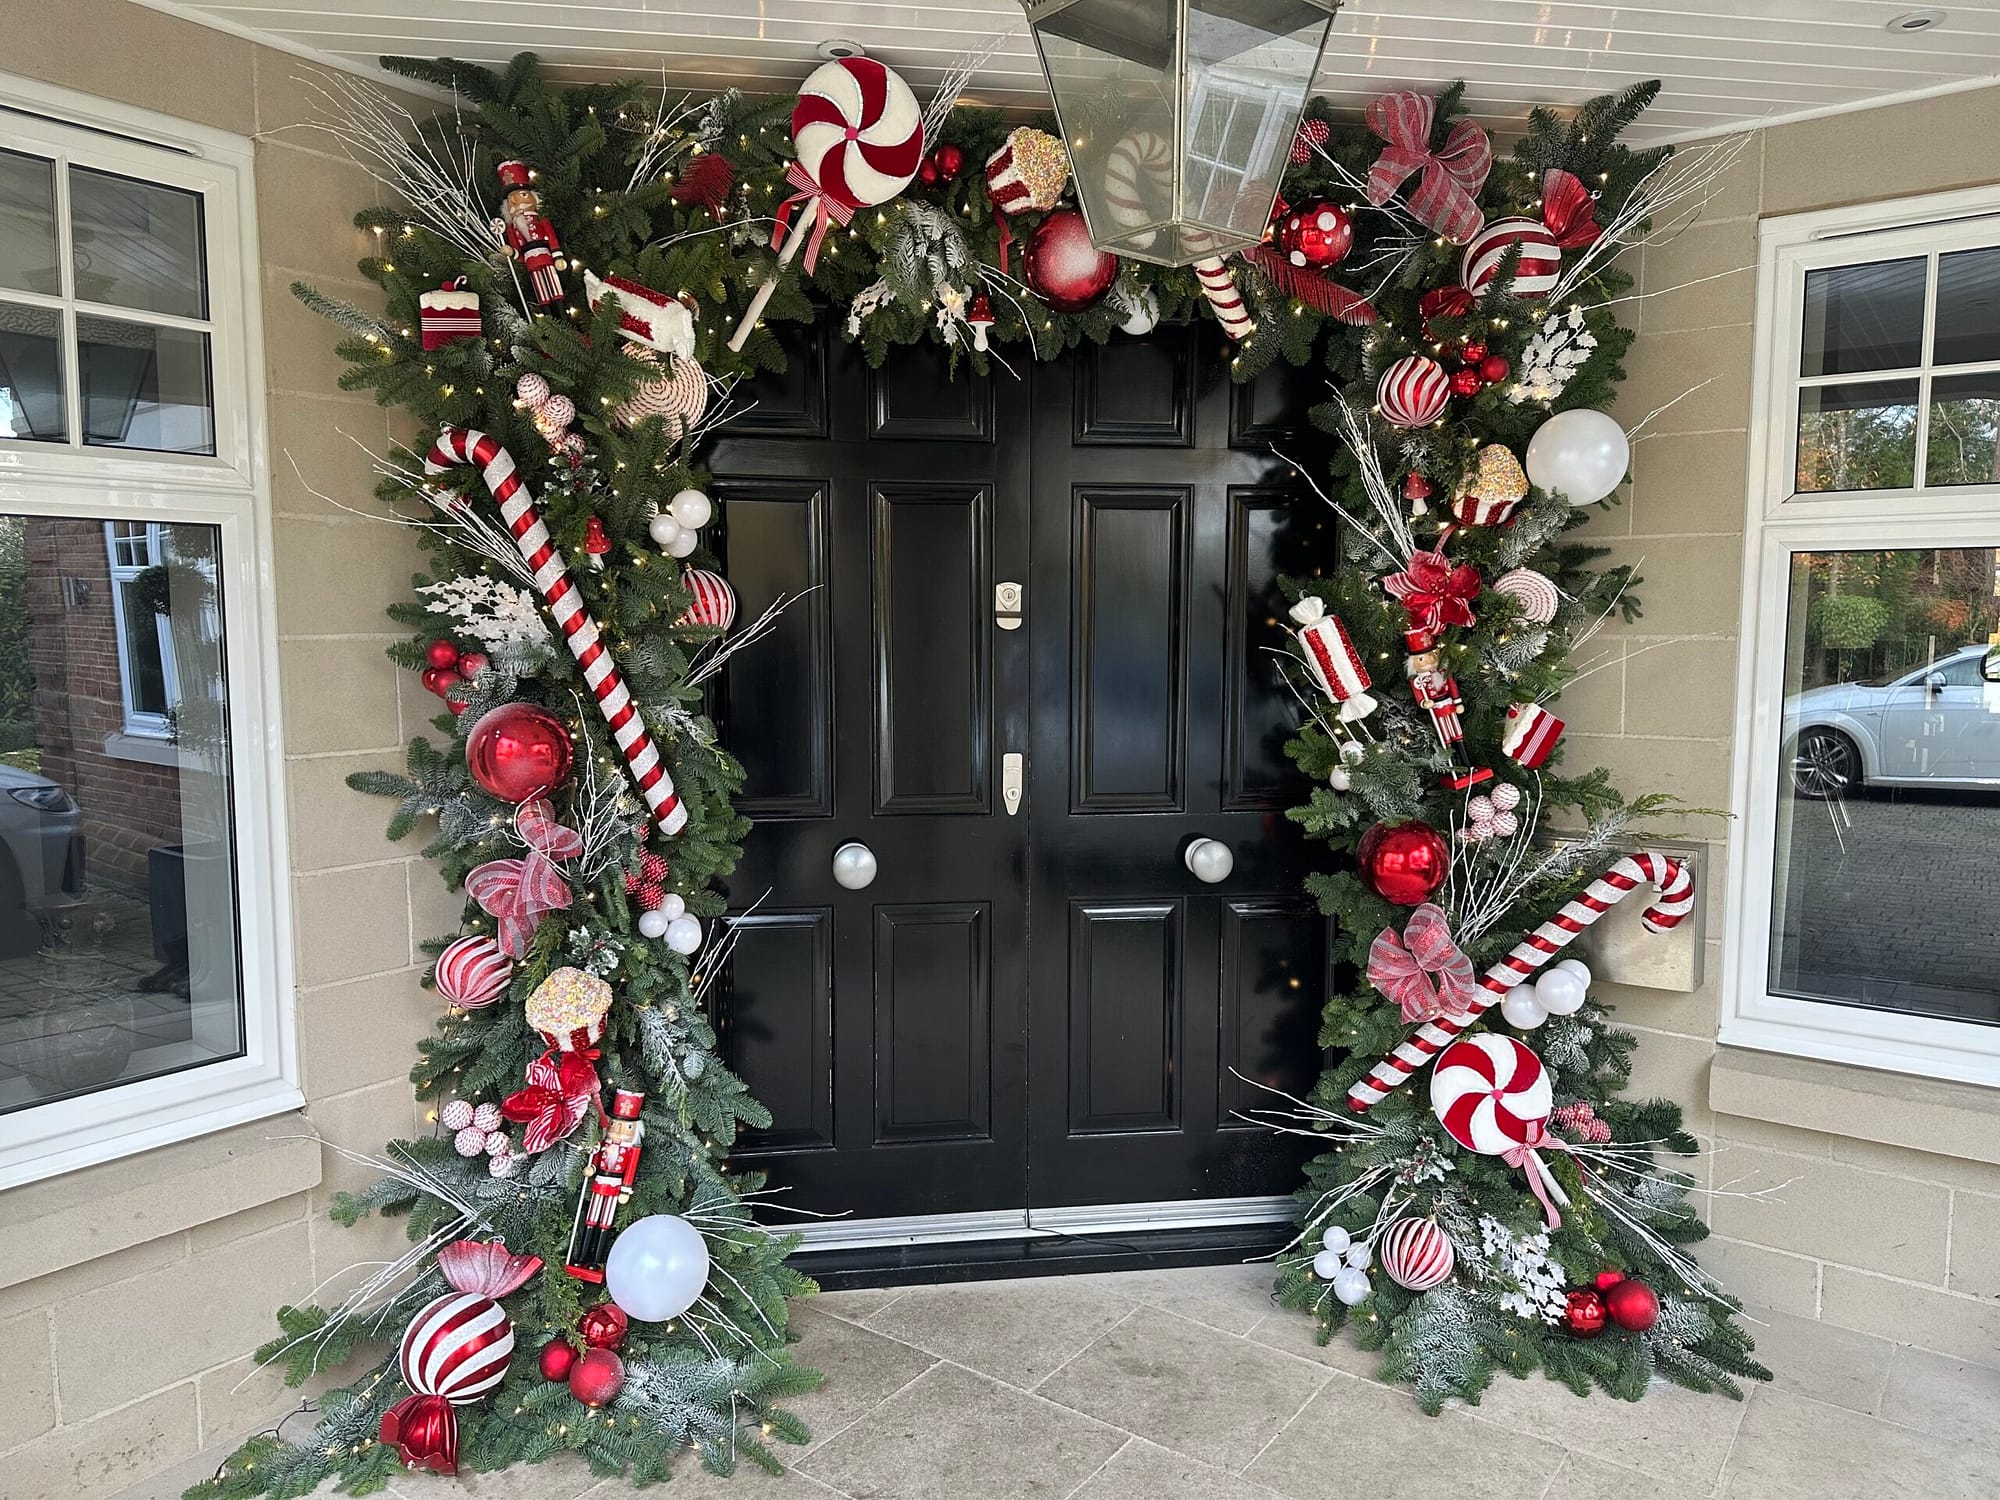 4 – Christmas Doorway